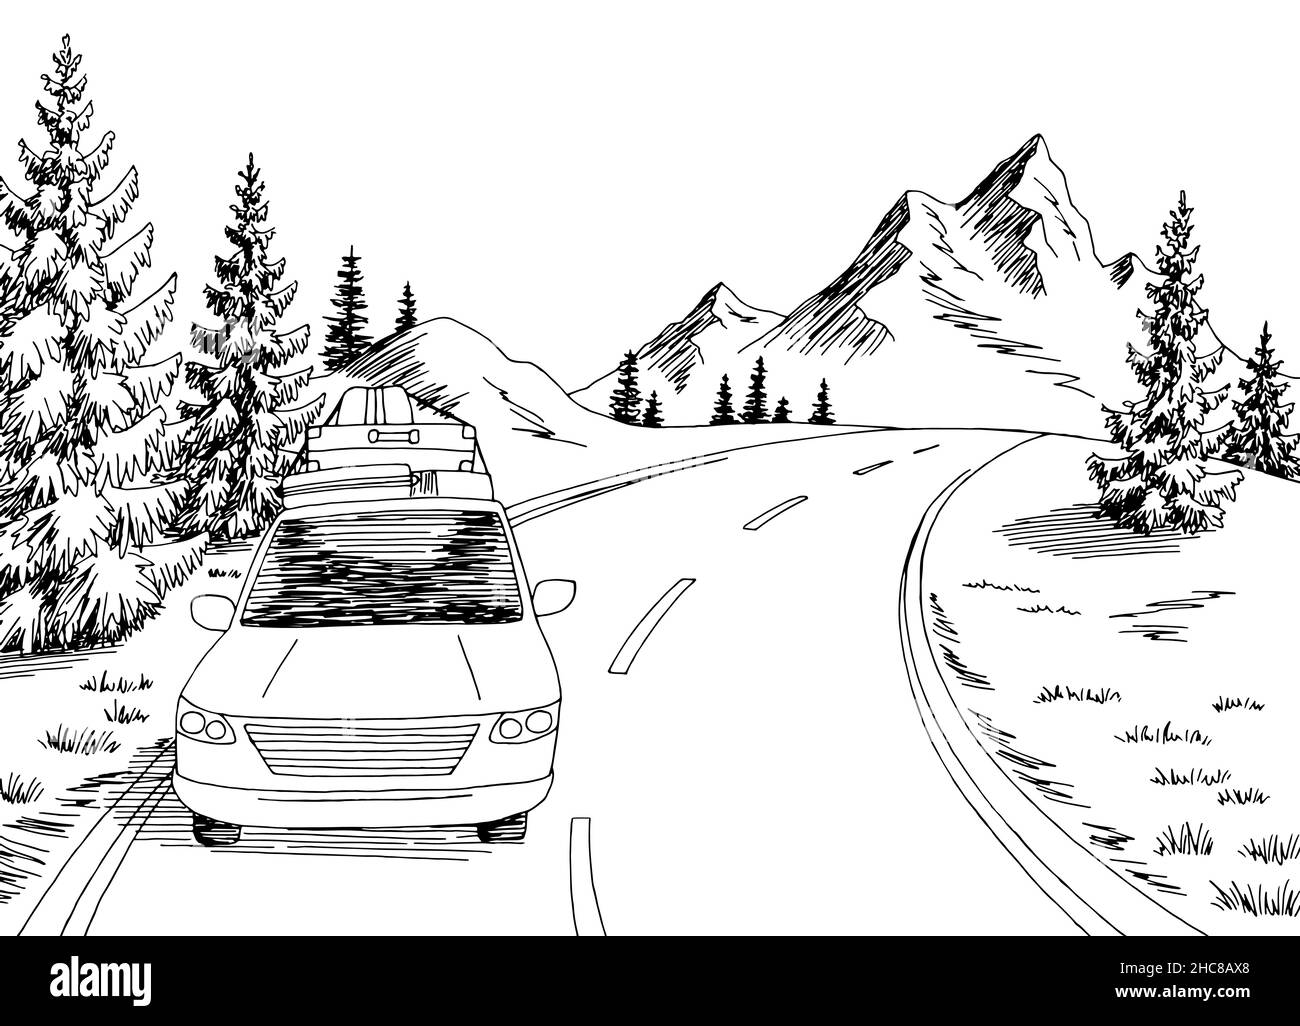 Voiture voyage route graphique noir blanc paysage dessin vecteur d'illustration Illustration de Vecteur